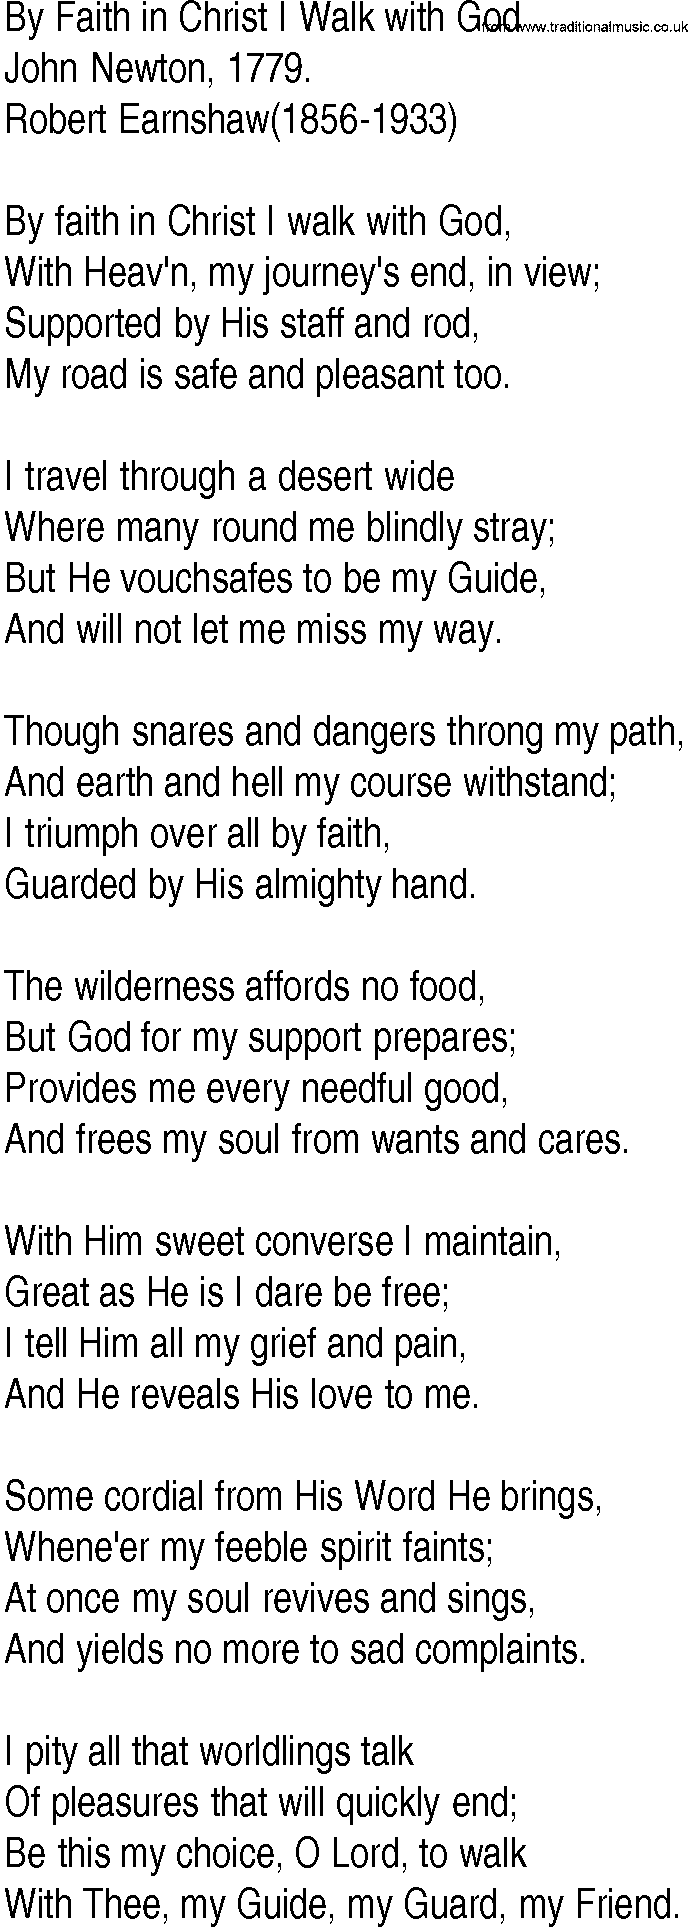 Hymn and Gospel Song: By Faith in Christ I Walk with God by John Newton lyrics